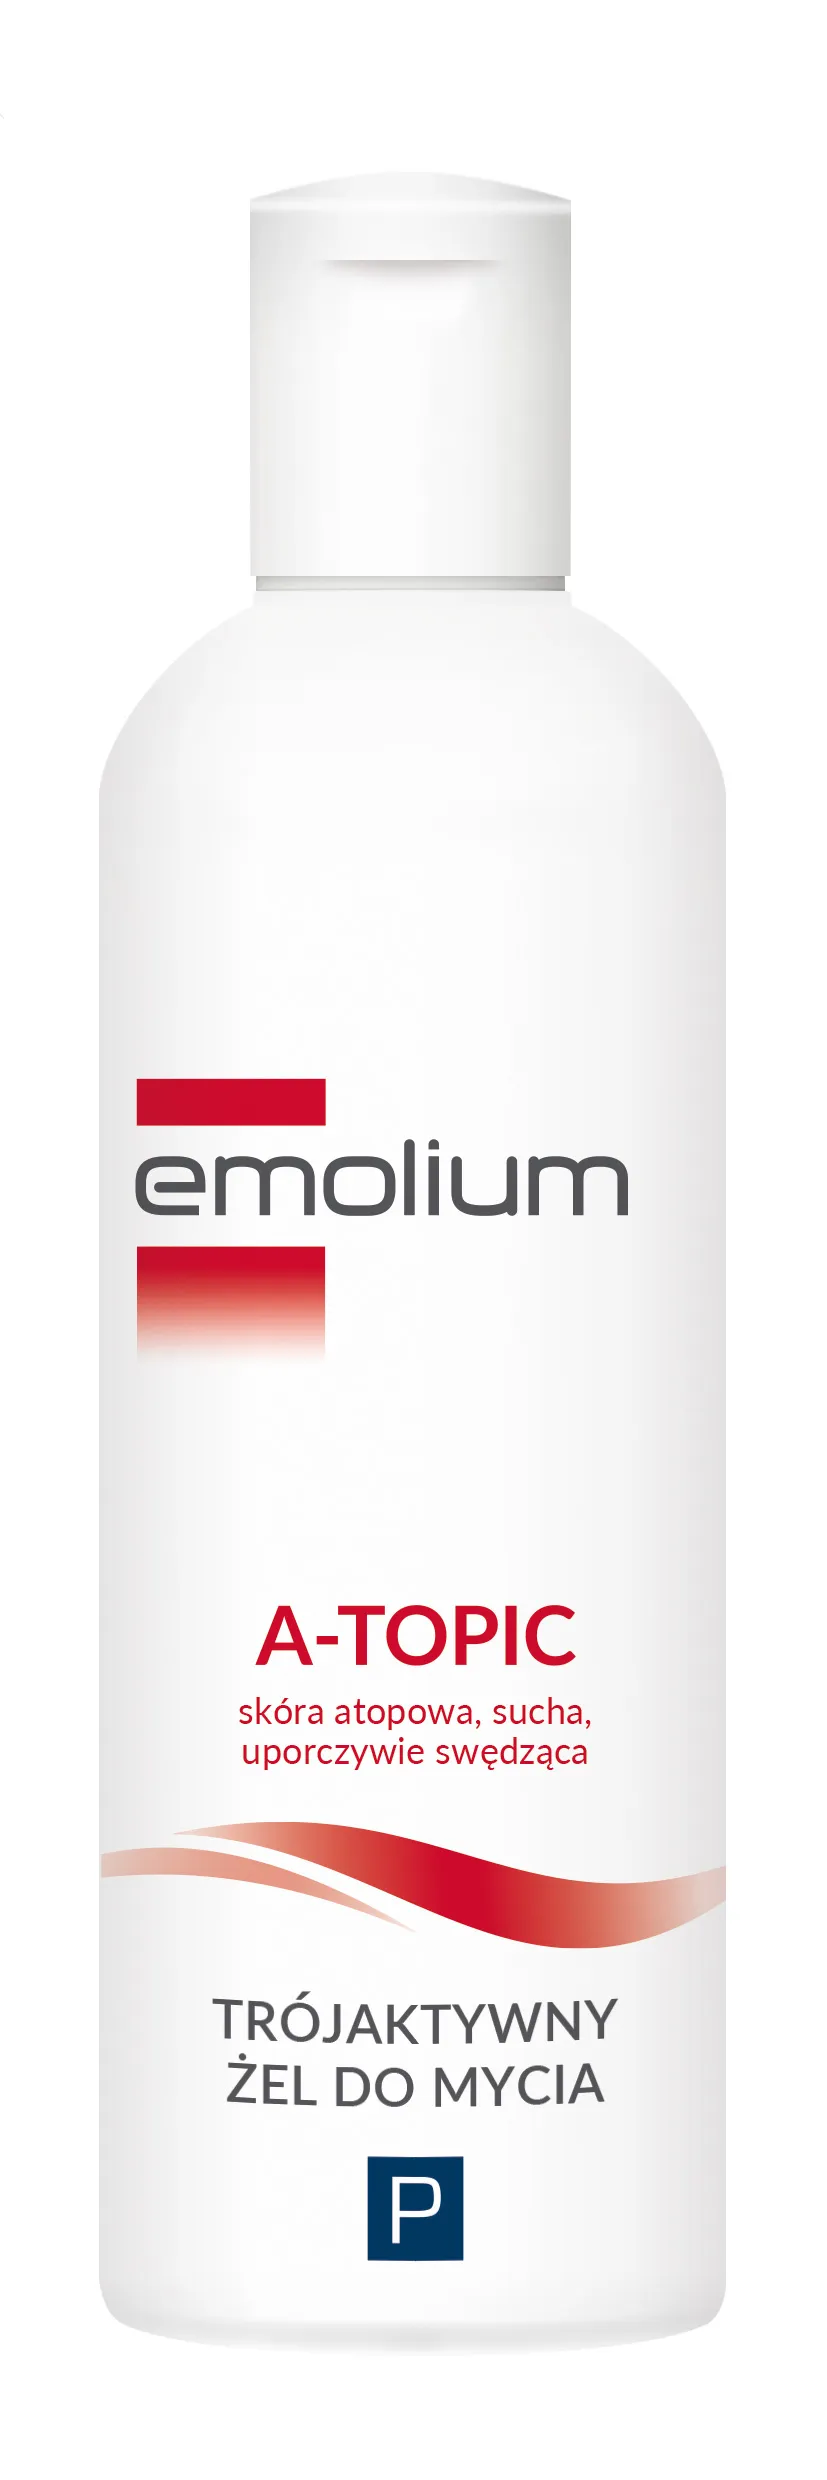 Emolium A-Topic, trójaktywny żel do mycia, 200 ml 